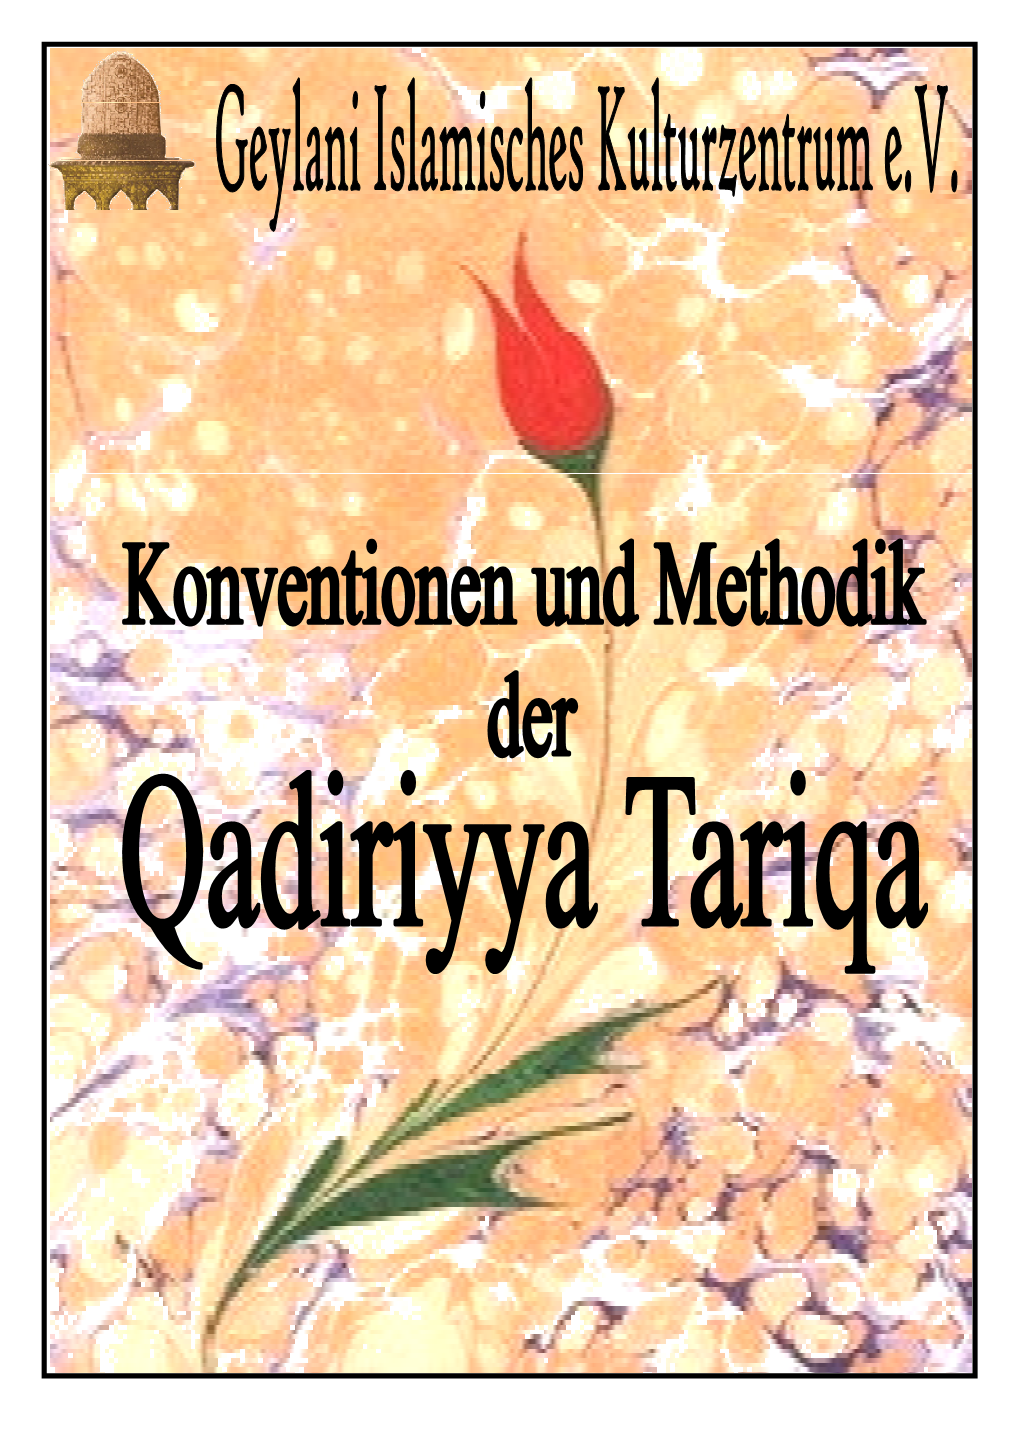 Die Qadiriyya Tariqa